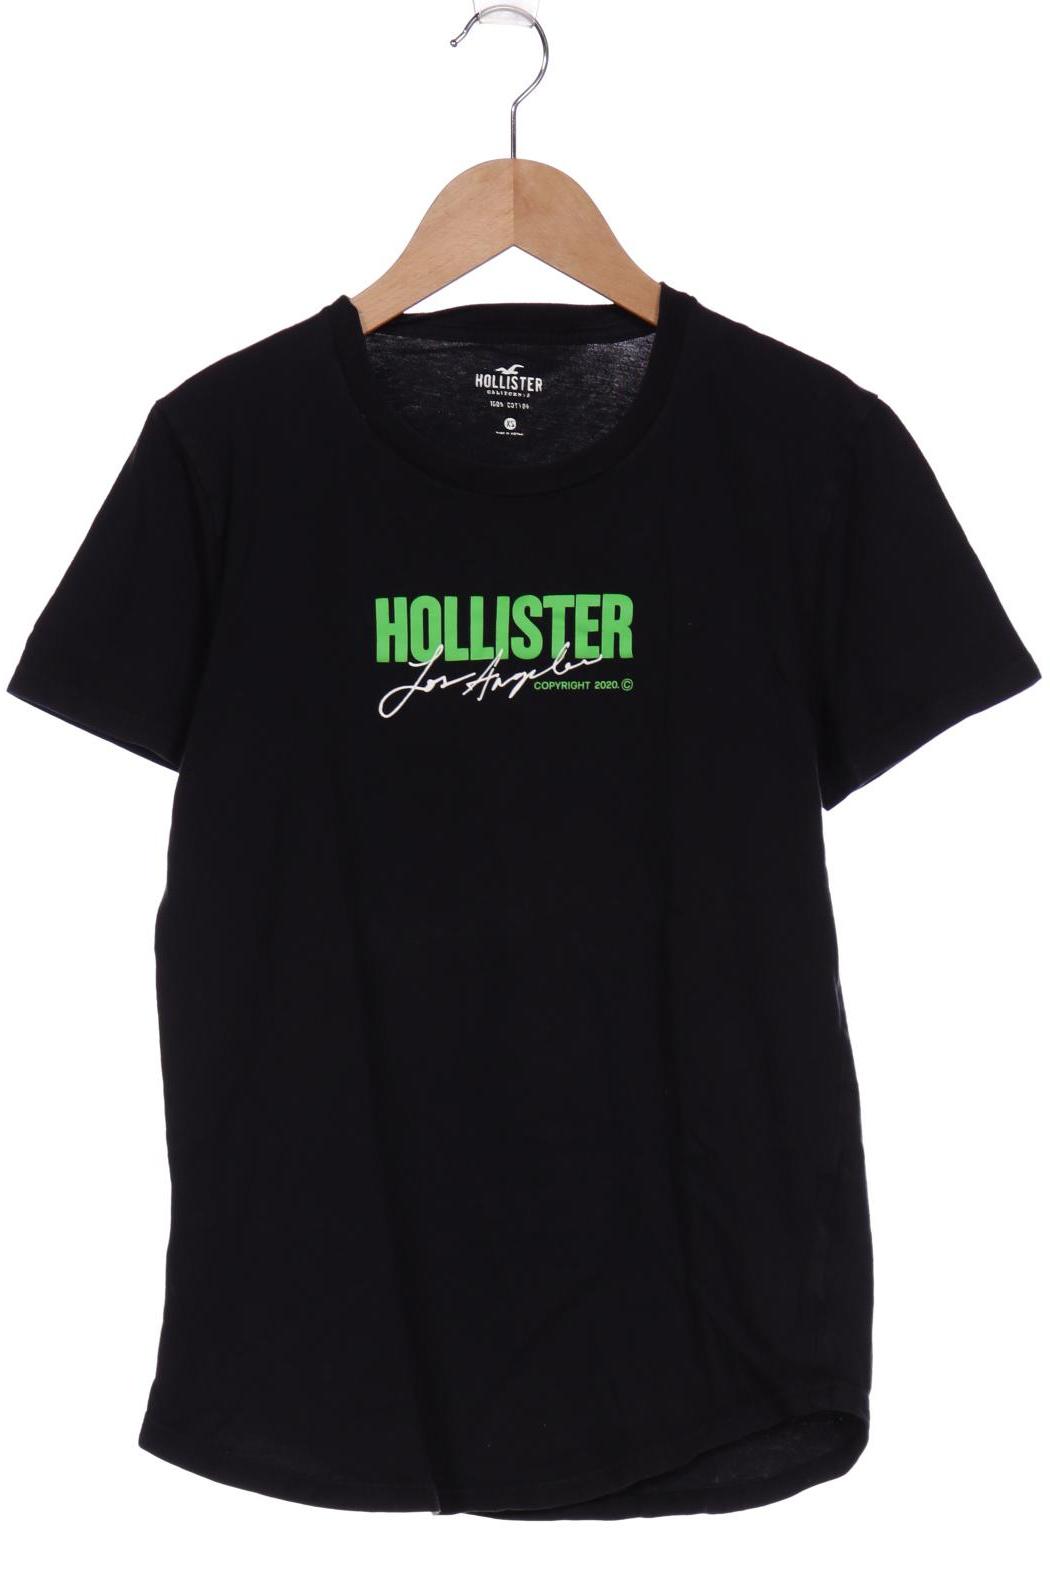 Hollister Herren T-Shirt, schwarz von Hollister